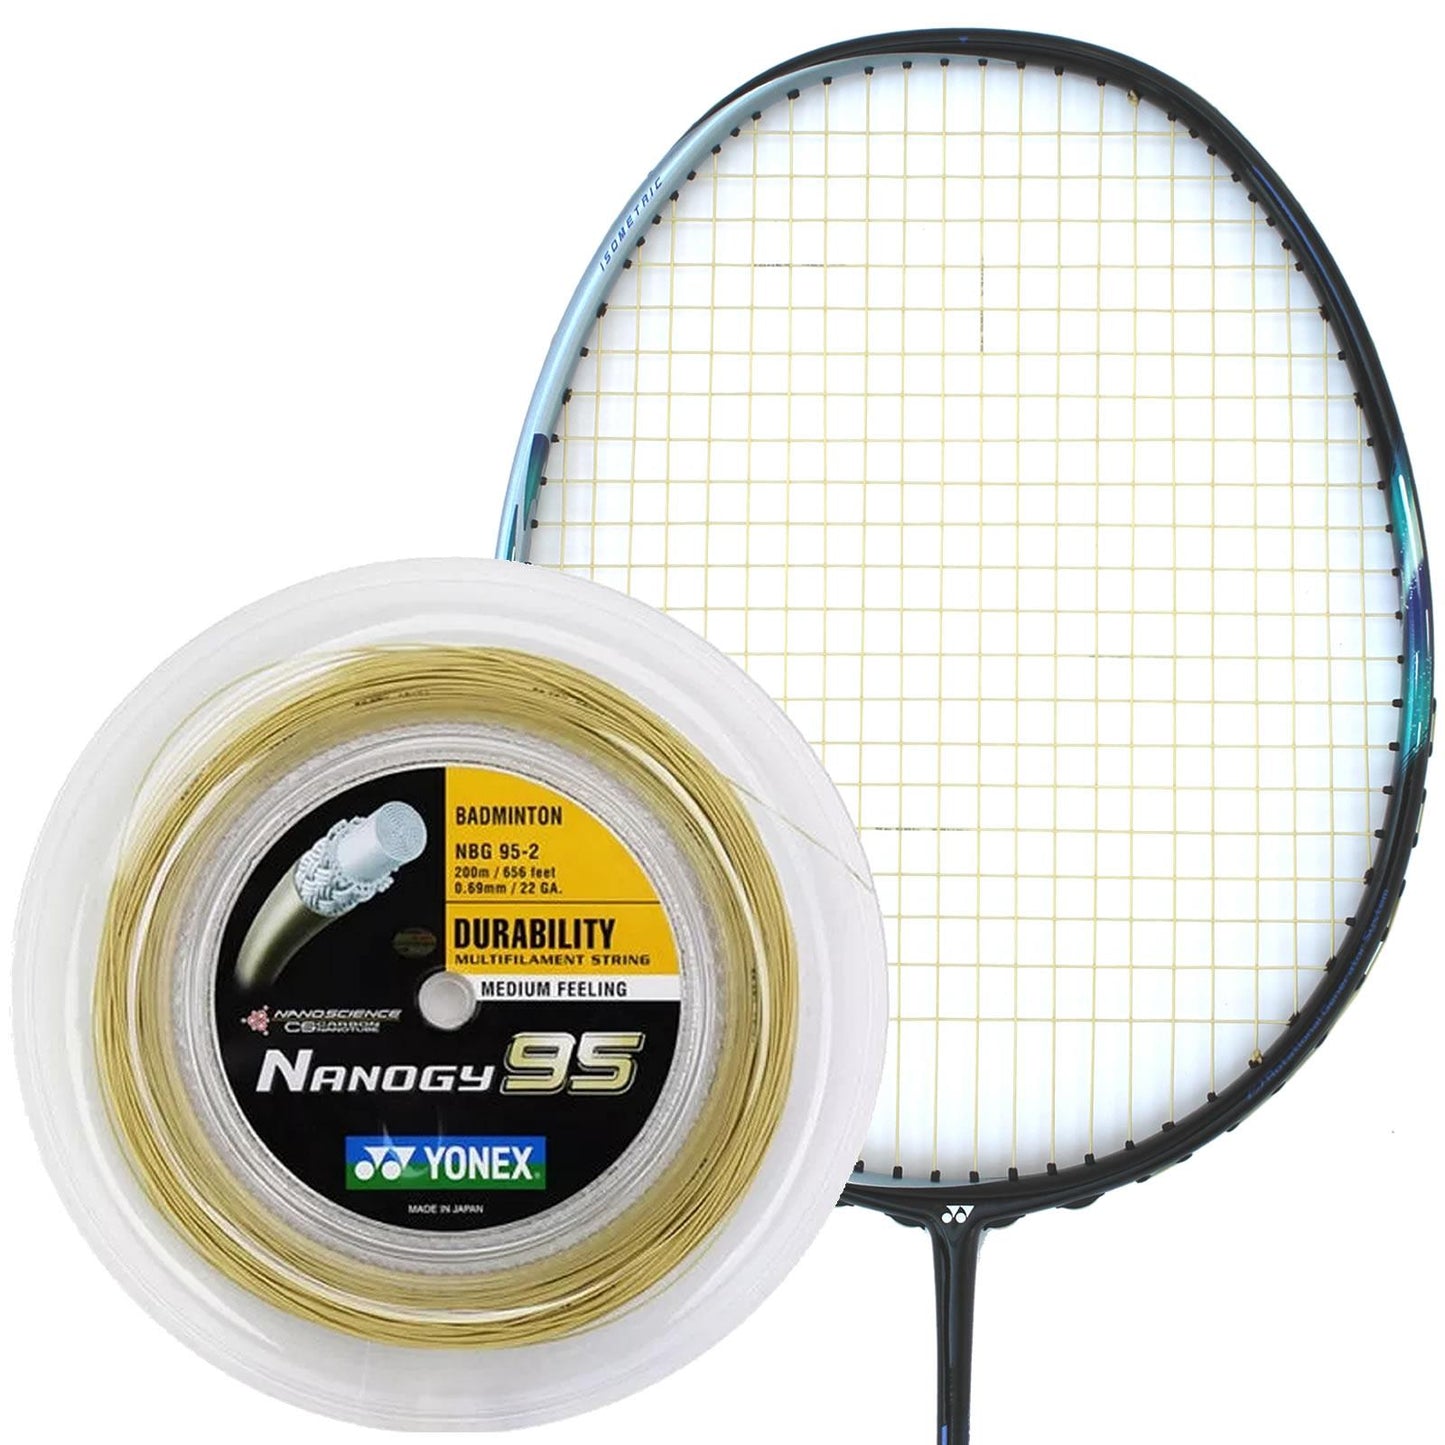 Yonex Nanogy 95 Badminton String Gold - 0.69mm 200m Reel